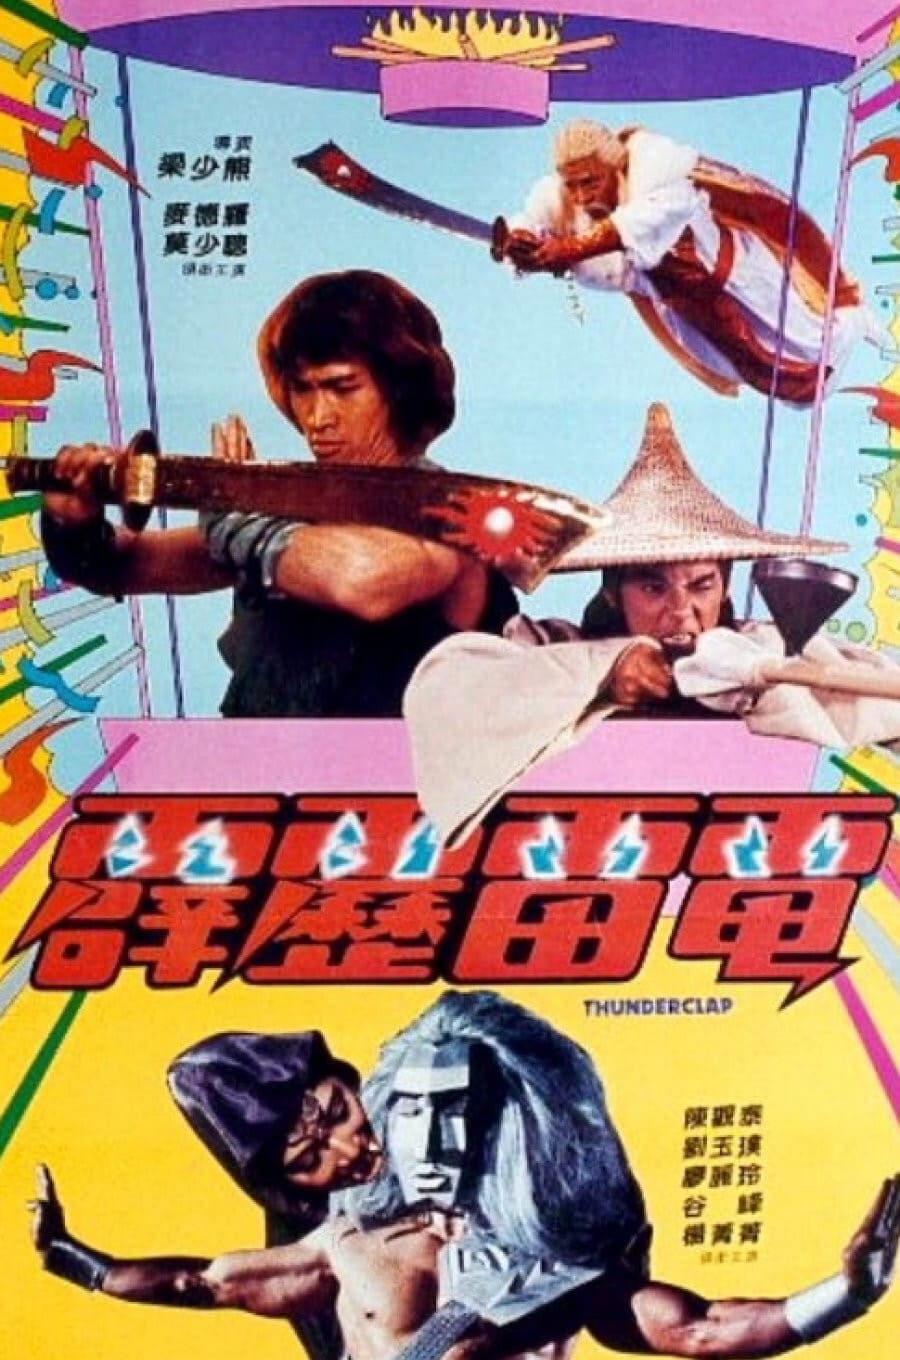 Thunderclap (1984)